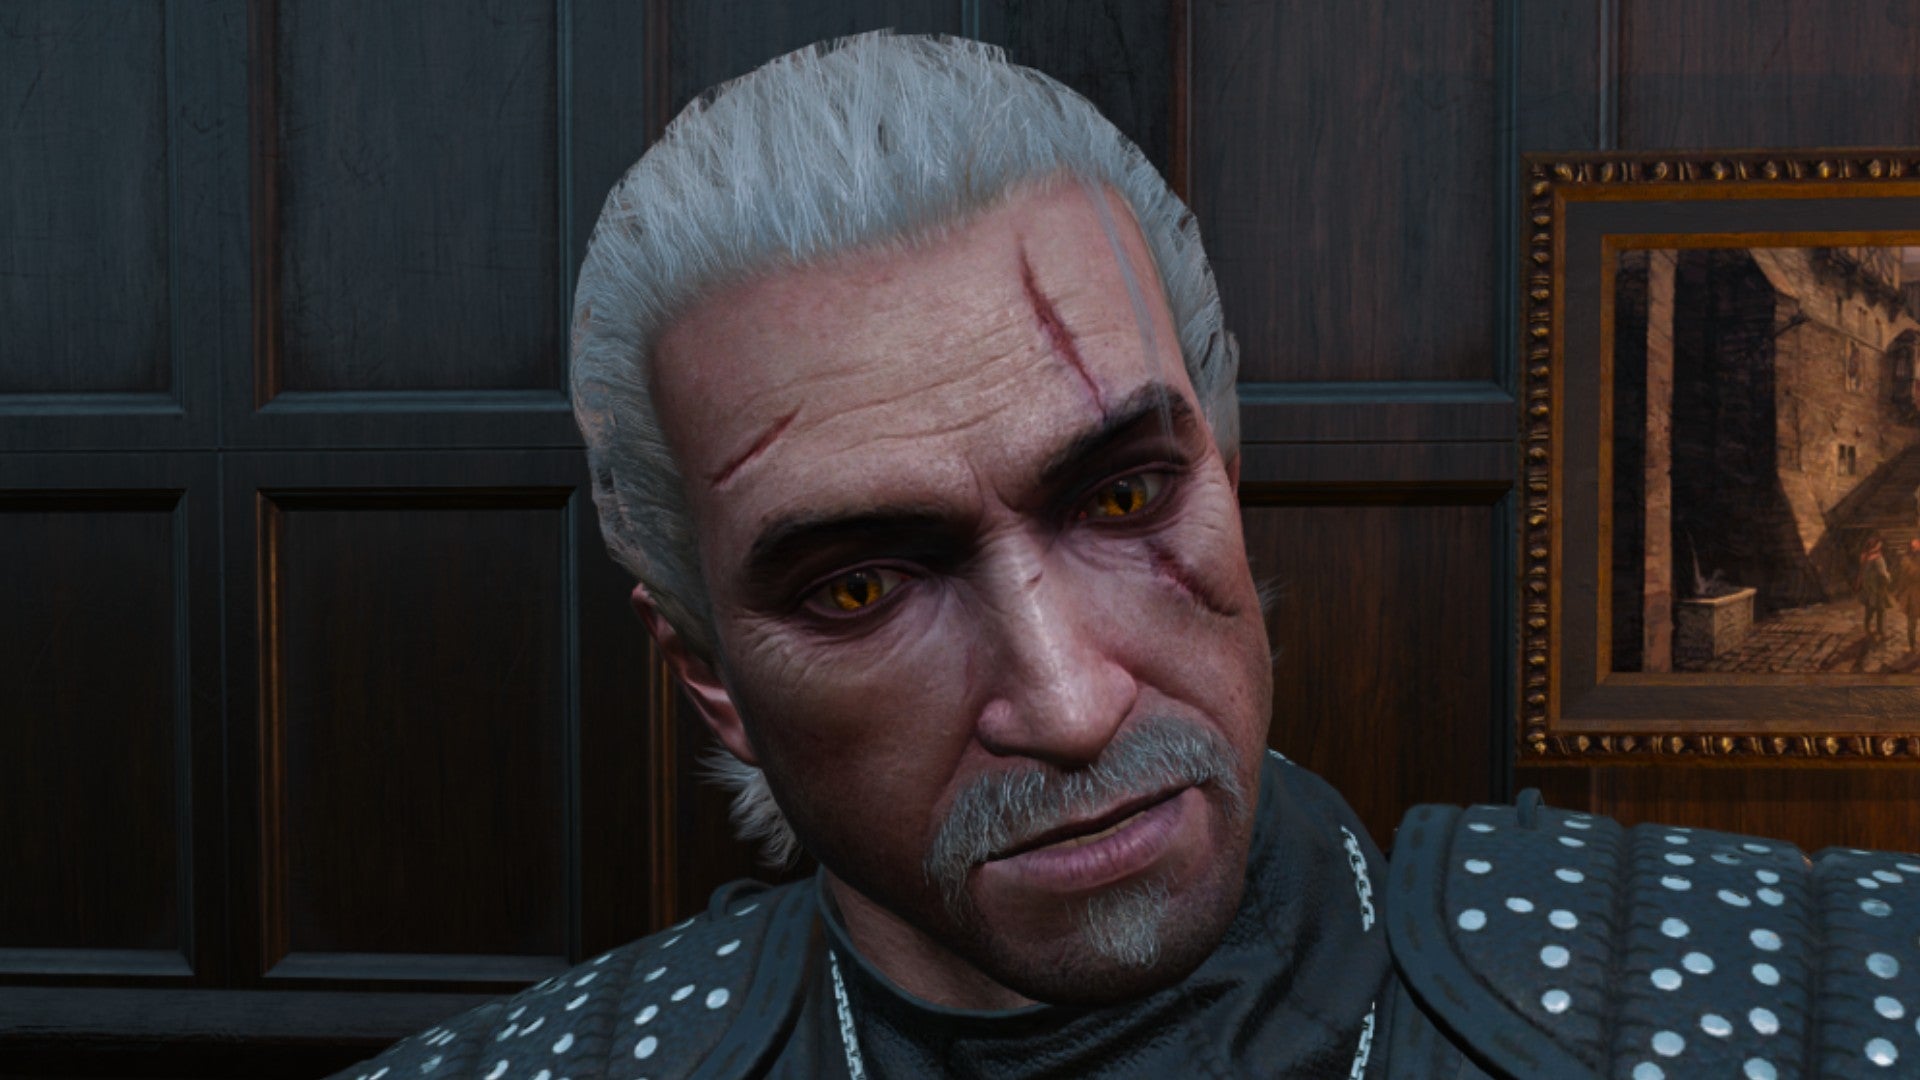 Captura de pantalla de Witcher 3 que muestra el corte de pelo rebelde élfico de Geralt desde el frente.